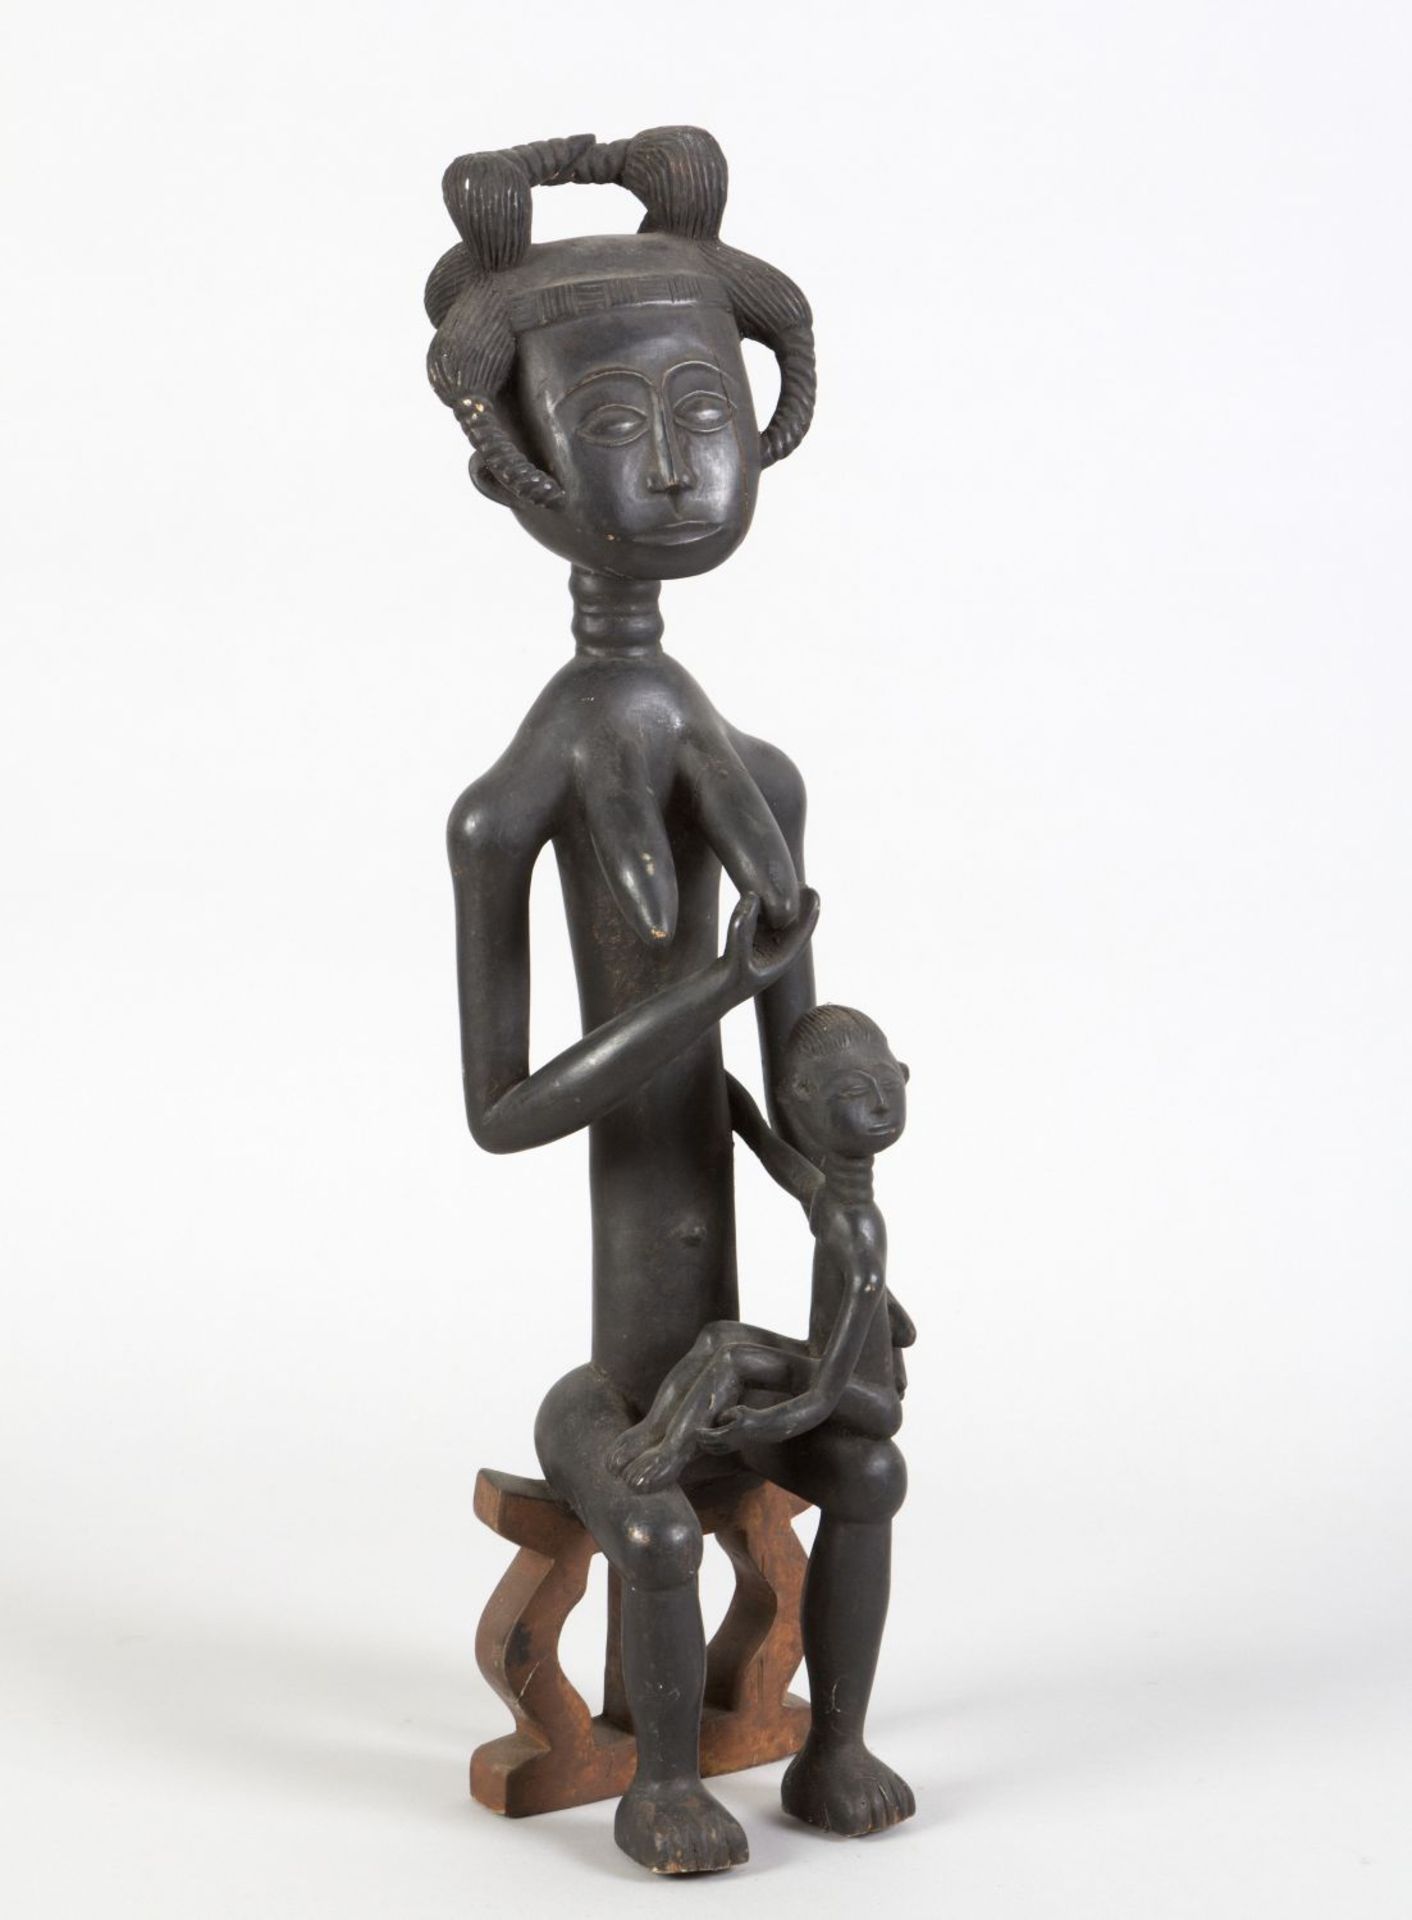 Sitzende weibliche Figur Holz, geschnitzt. Ein Kind auf dem Schoß sitzend. Afrika. H. 77 cm. Besch.